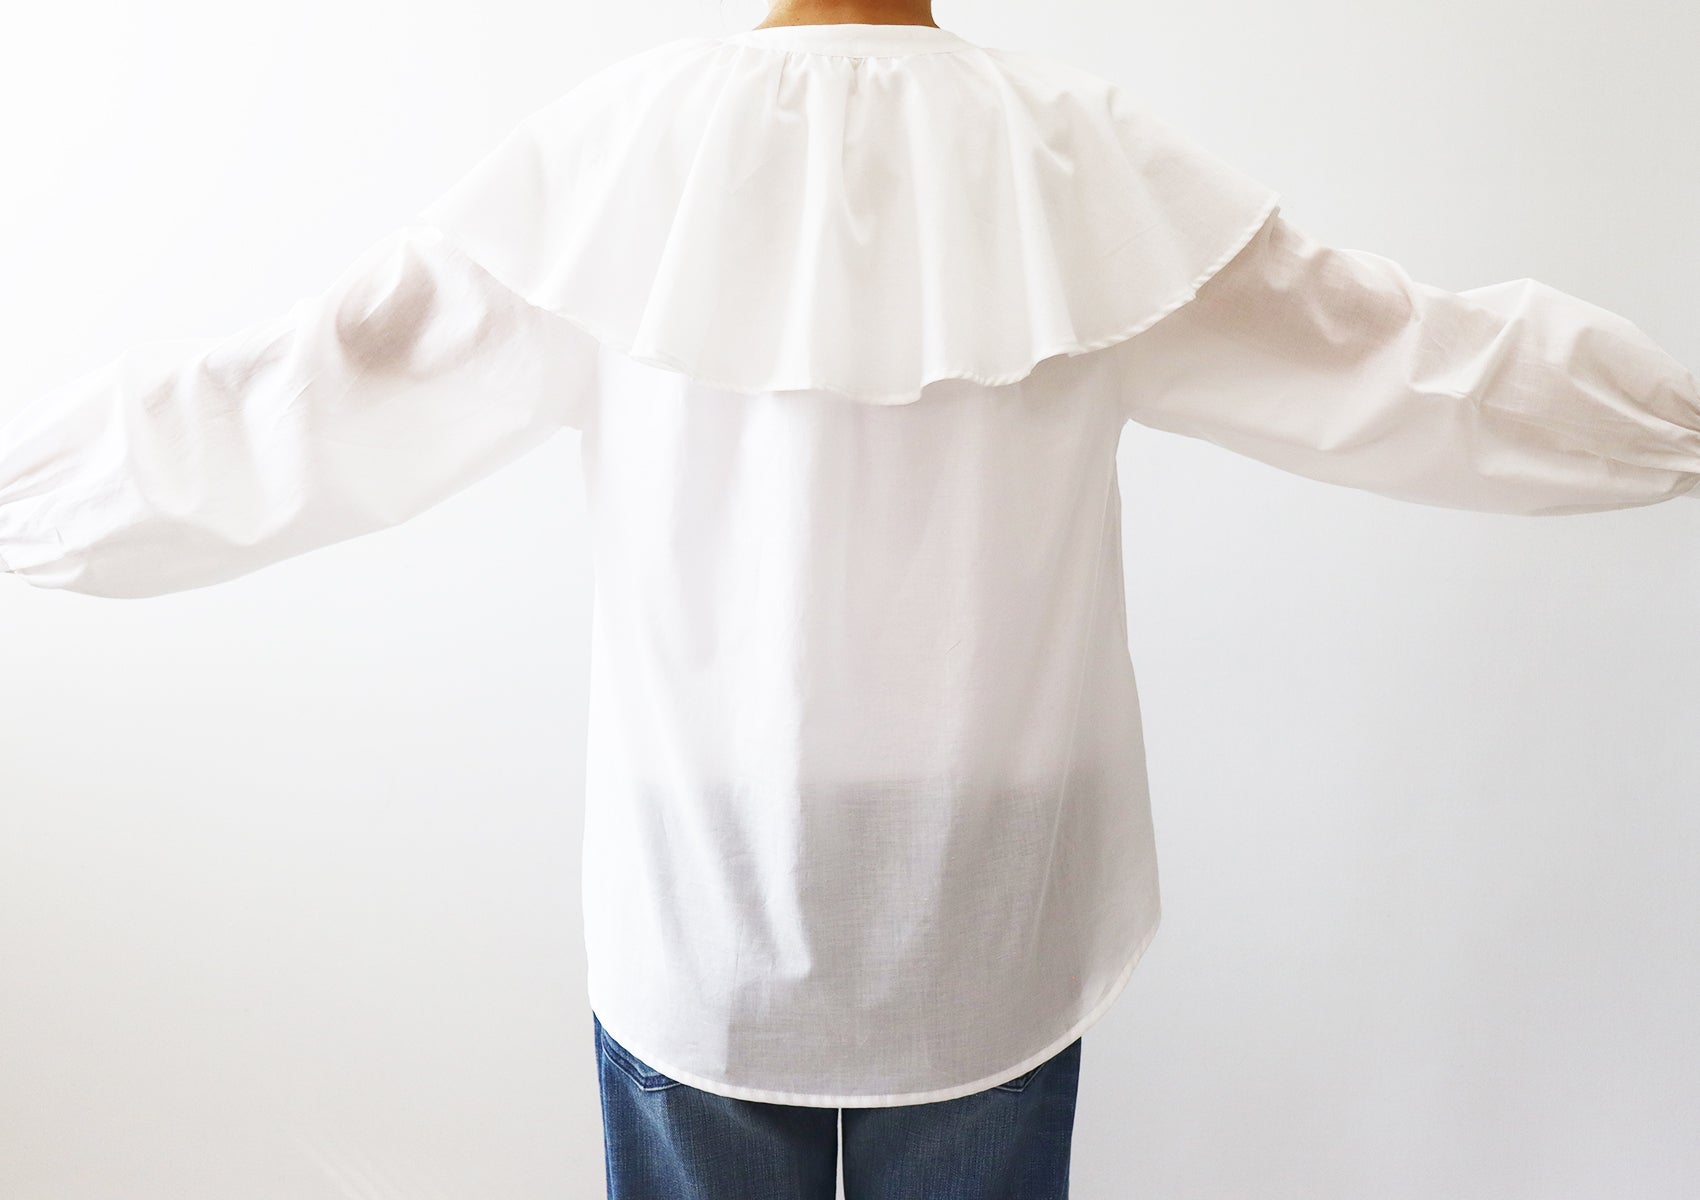 [854] Raglan blouse with ruffle collar